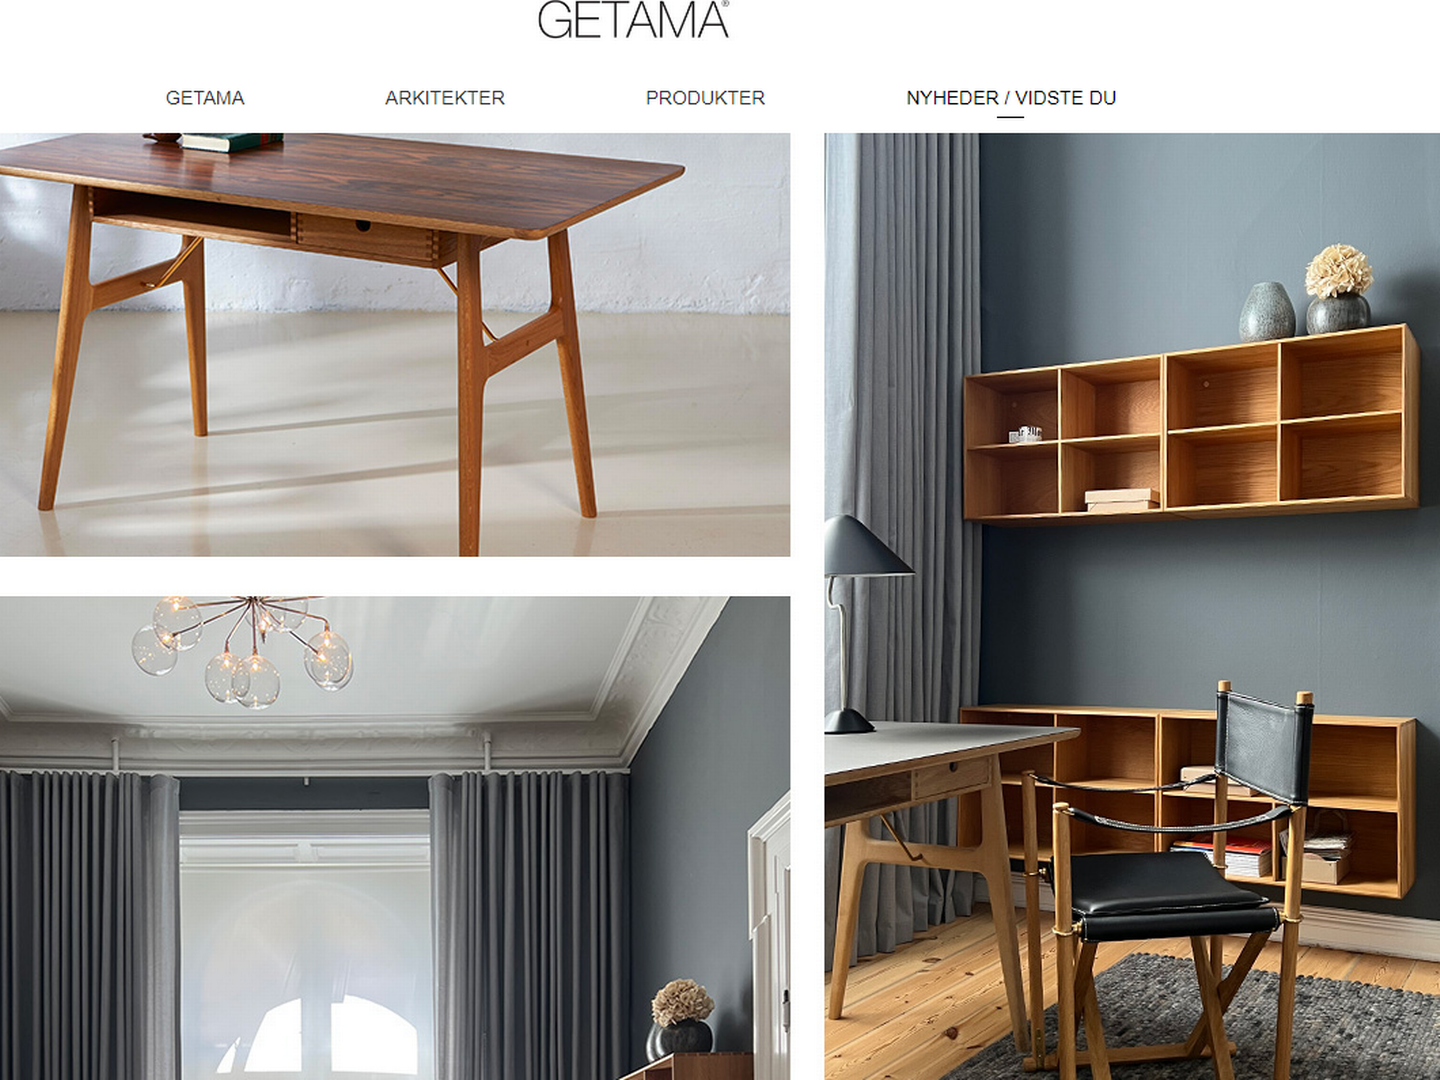 Getama producerer blandt andet stole designet af møbelarkitekten Hans J. Wegner i den nu nedbrændte produktionsbygning. | Foto: PR / Getama